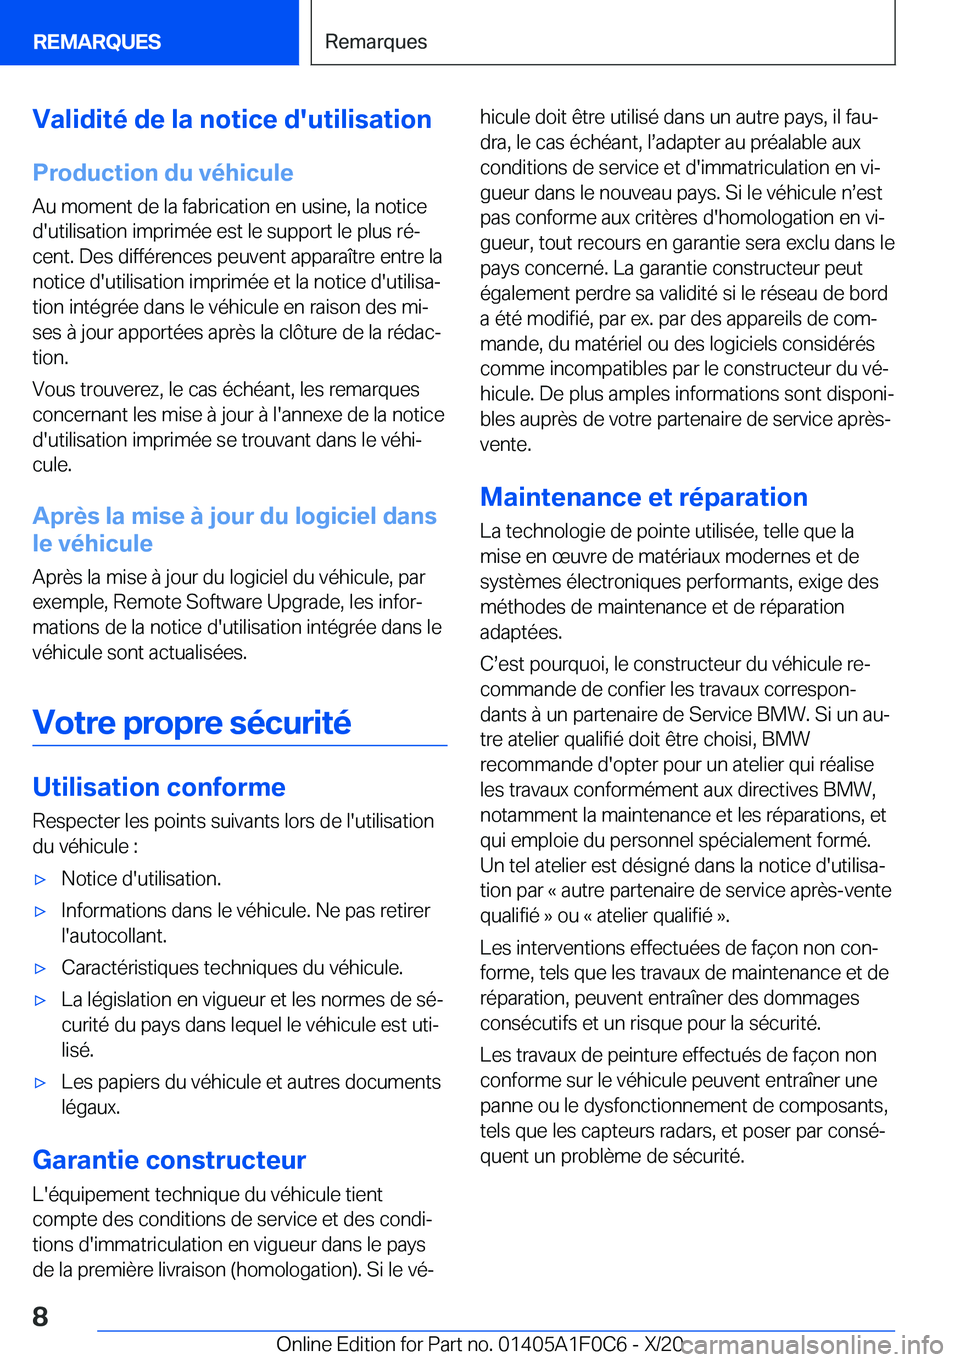 BMW X6 2021  Notices Demploi (in French) �V�a�l�i�d�i�t�é��d�e��l�a��n�o�t�i�c�e��d�'�u�t�i�l�i�s�a�t�i�o�n
�P�r�o�d�u�c�t�i�o�n��d�u��v�é�h�i�c�u�l�e
�A�u��m�o�m�e�n�t��d�e��l�a��f�a�b�r�i�c�a�t�i�o�n��e�n��u�s�i�n�e�,��l